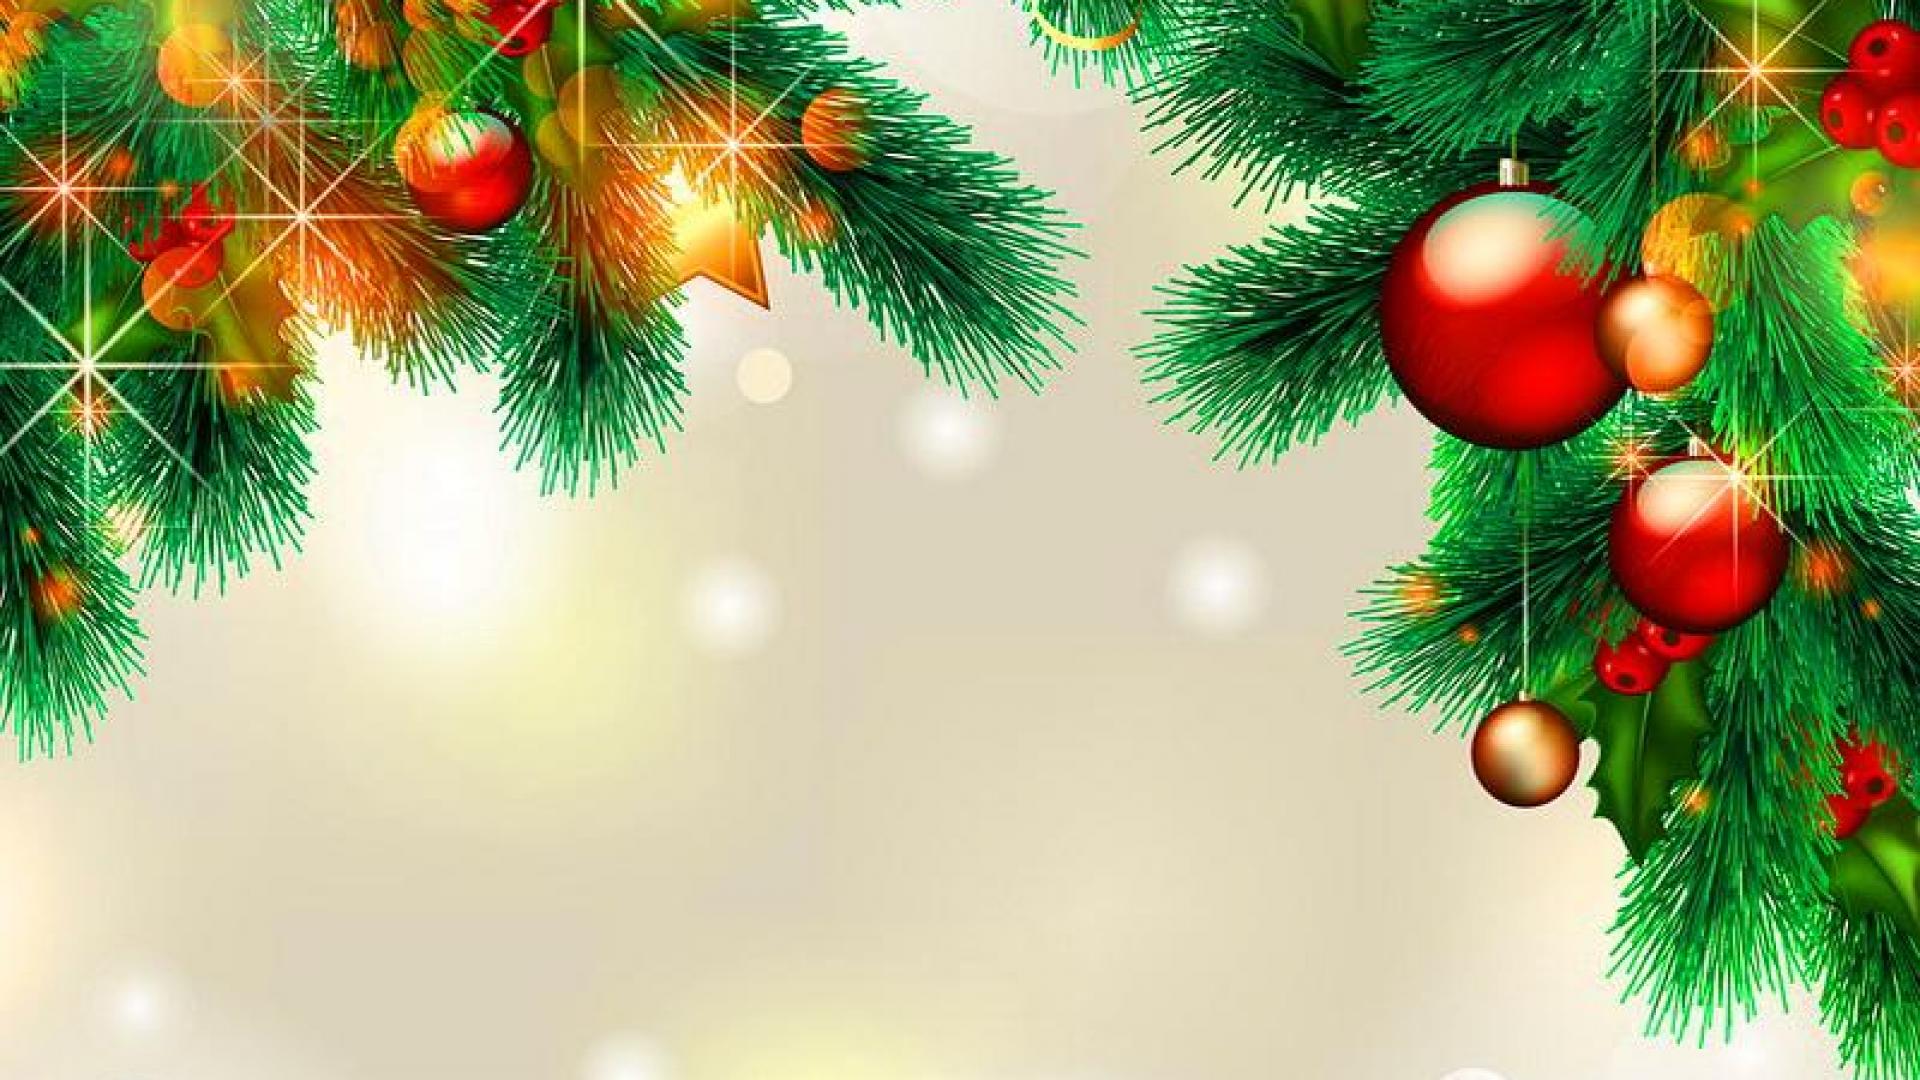 sfondi di natale hd,ornamento di natale,albero,albero di natale,decorazione natalizia,abete